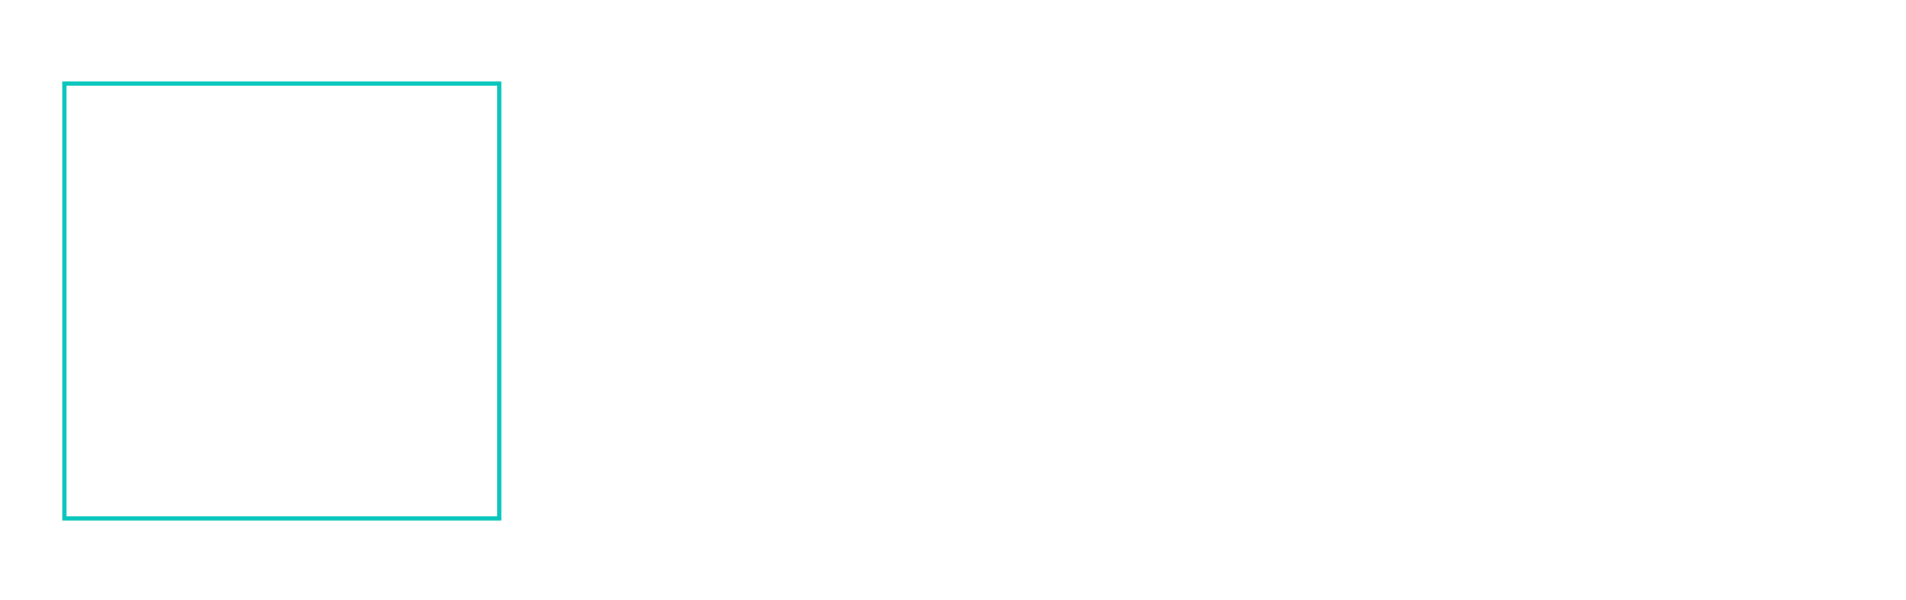 Metro Package Printing